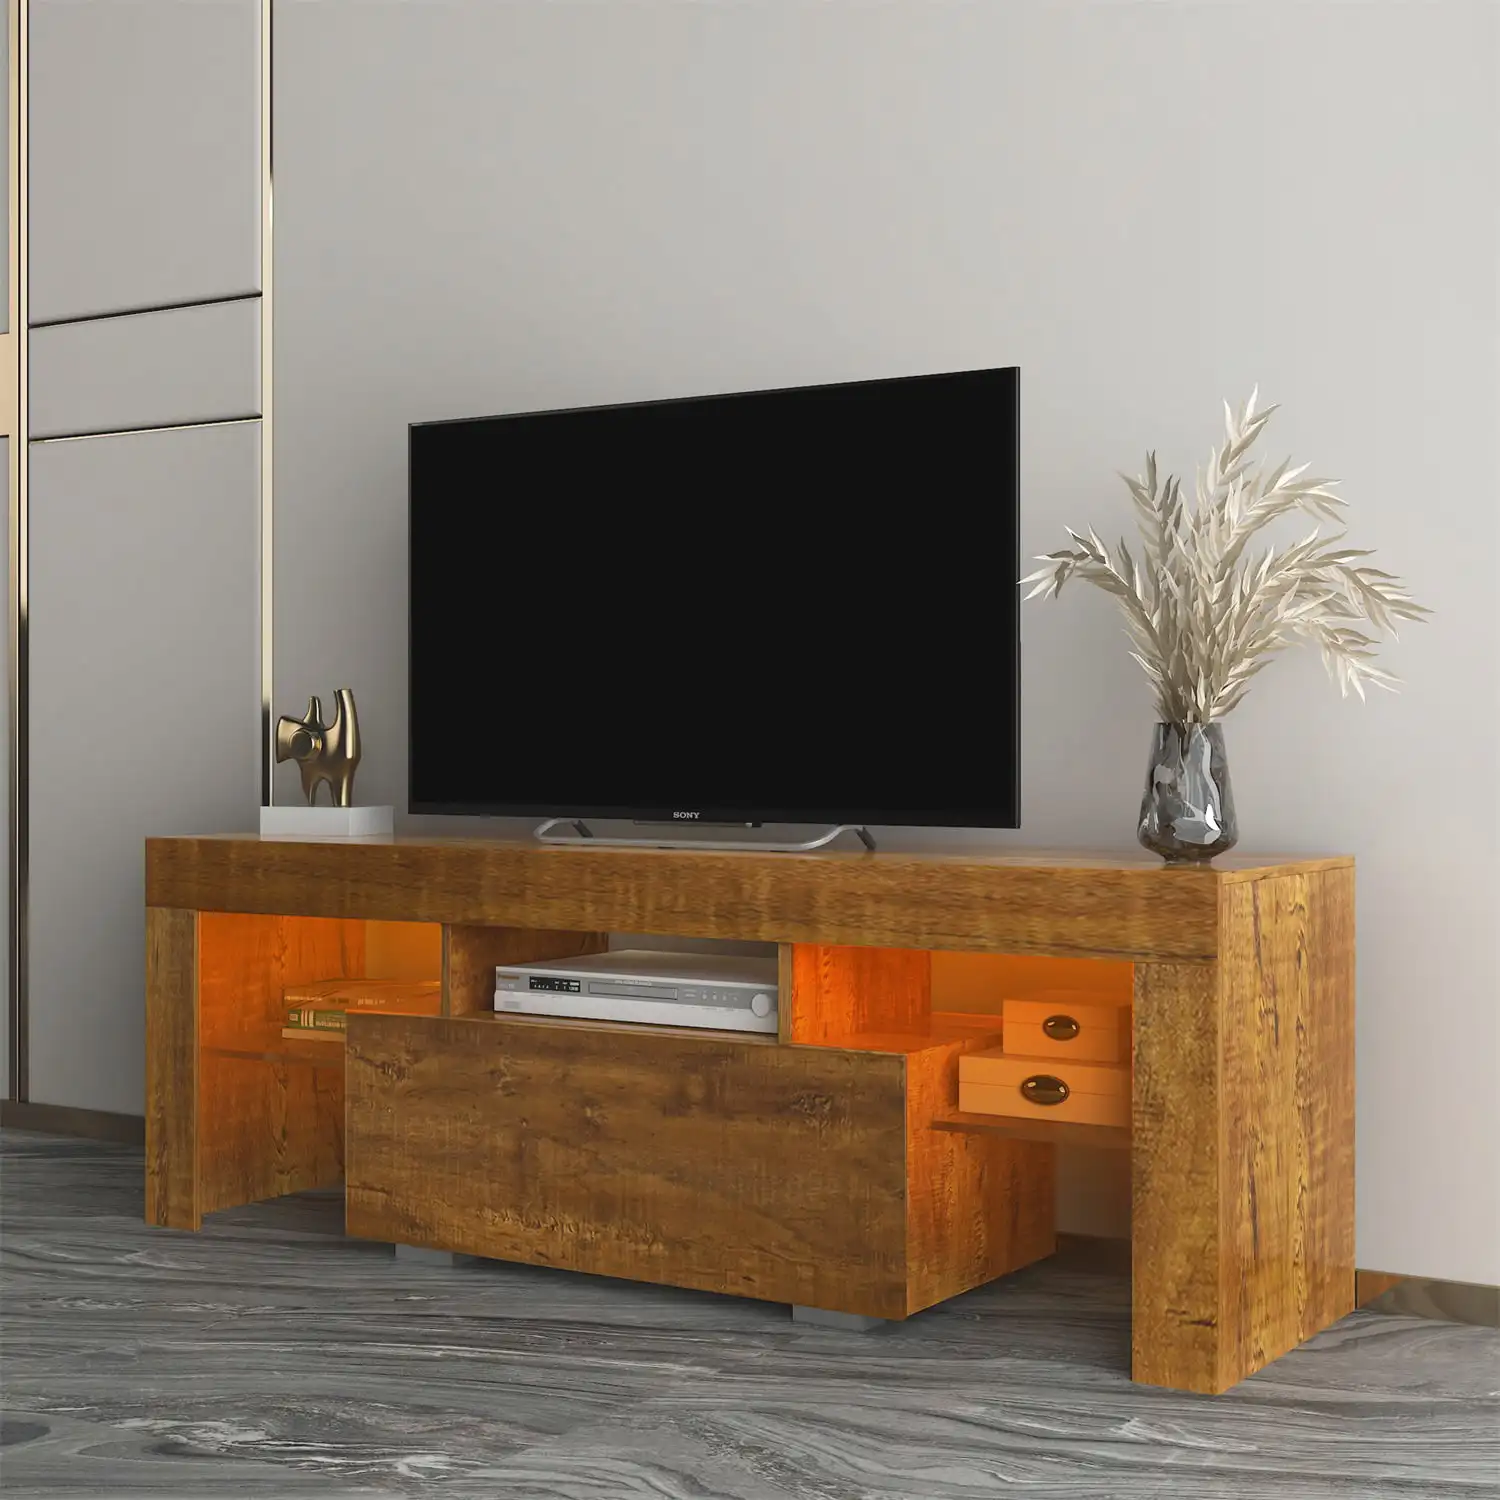 Подставка для телевизора со светодиодной RGB подсветкой, Телевизионный шкаф для развлекательного центра, Глянцевый столик для телевизионной консоли для телевизоров до 55 дюймов